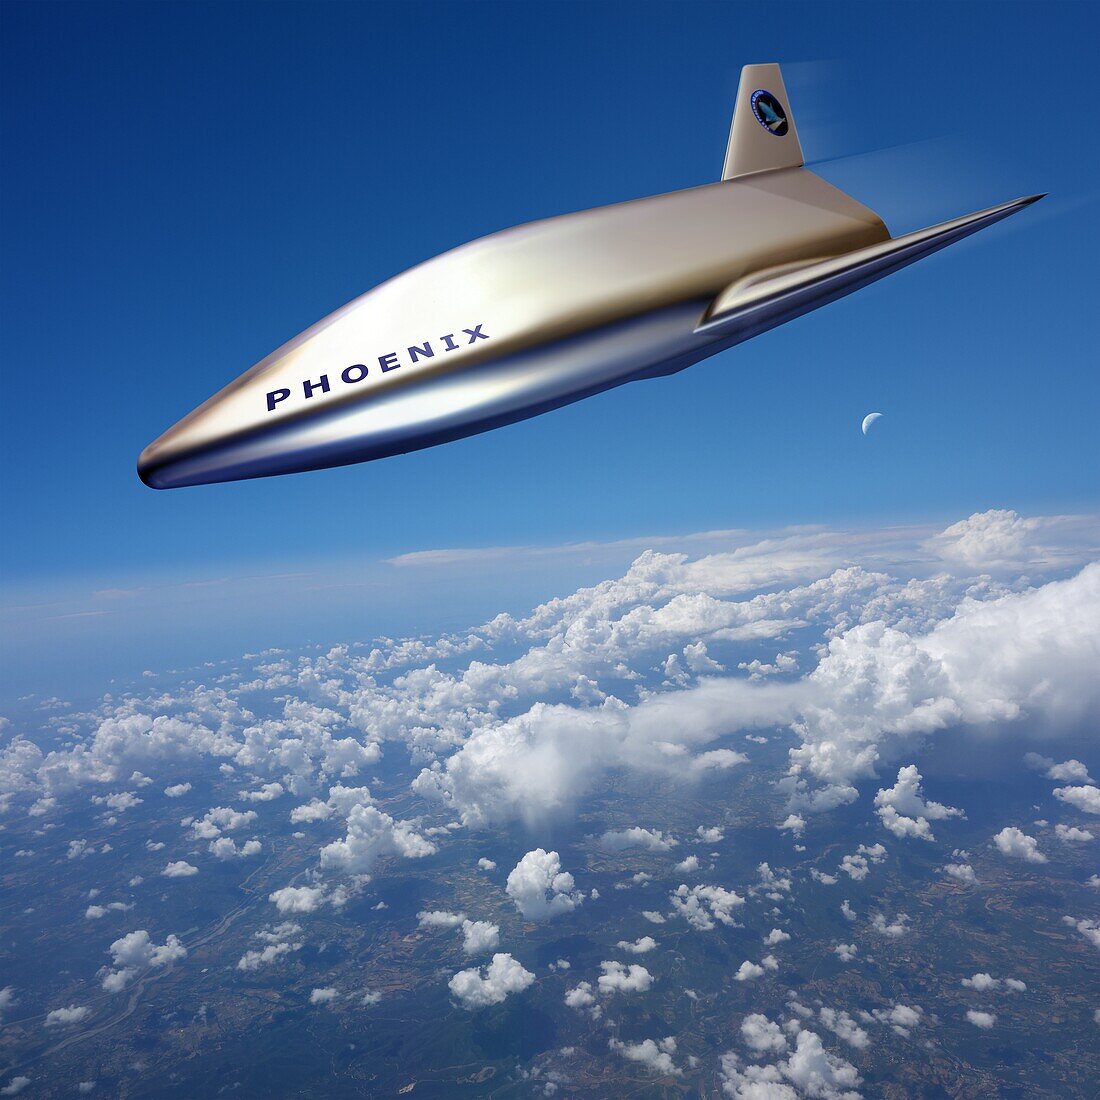 Phoenix prototype spaceplane, illustration